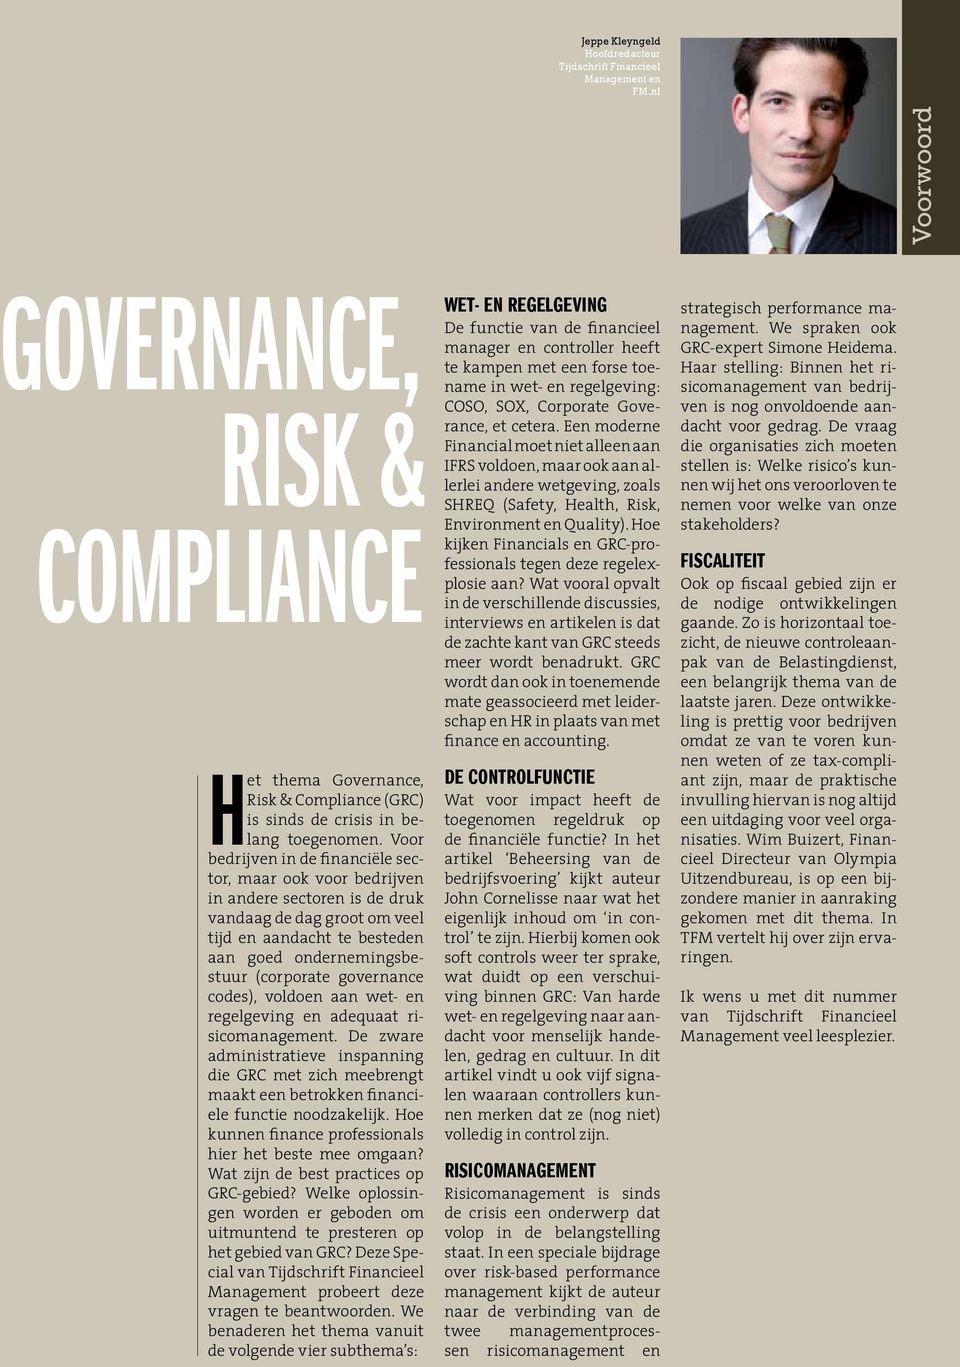 governance codes), voldoen aan wet- en regelgeving en adequaat risicomanagement. De zware administratieve inspanning die GRC met zich meebrengt maakt een betrokken financiële functie noodzakelijk.